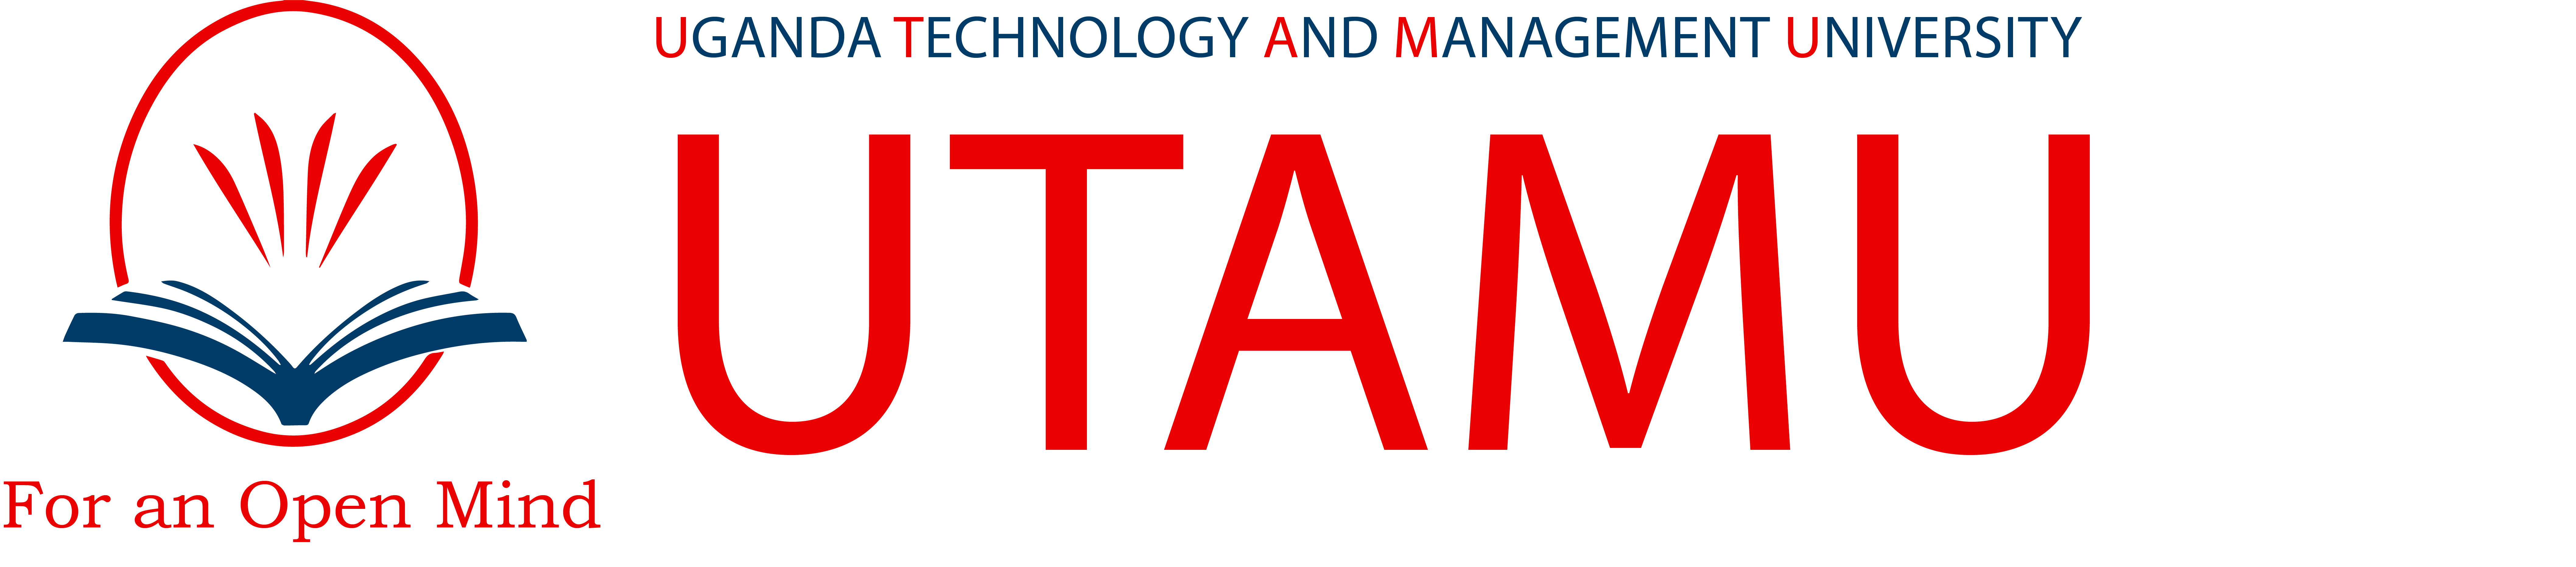 Uganda Technology And Management University